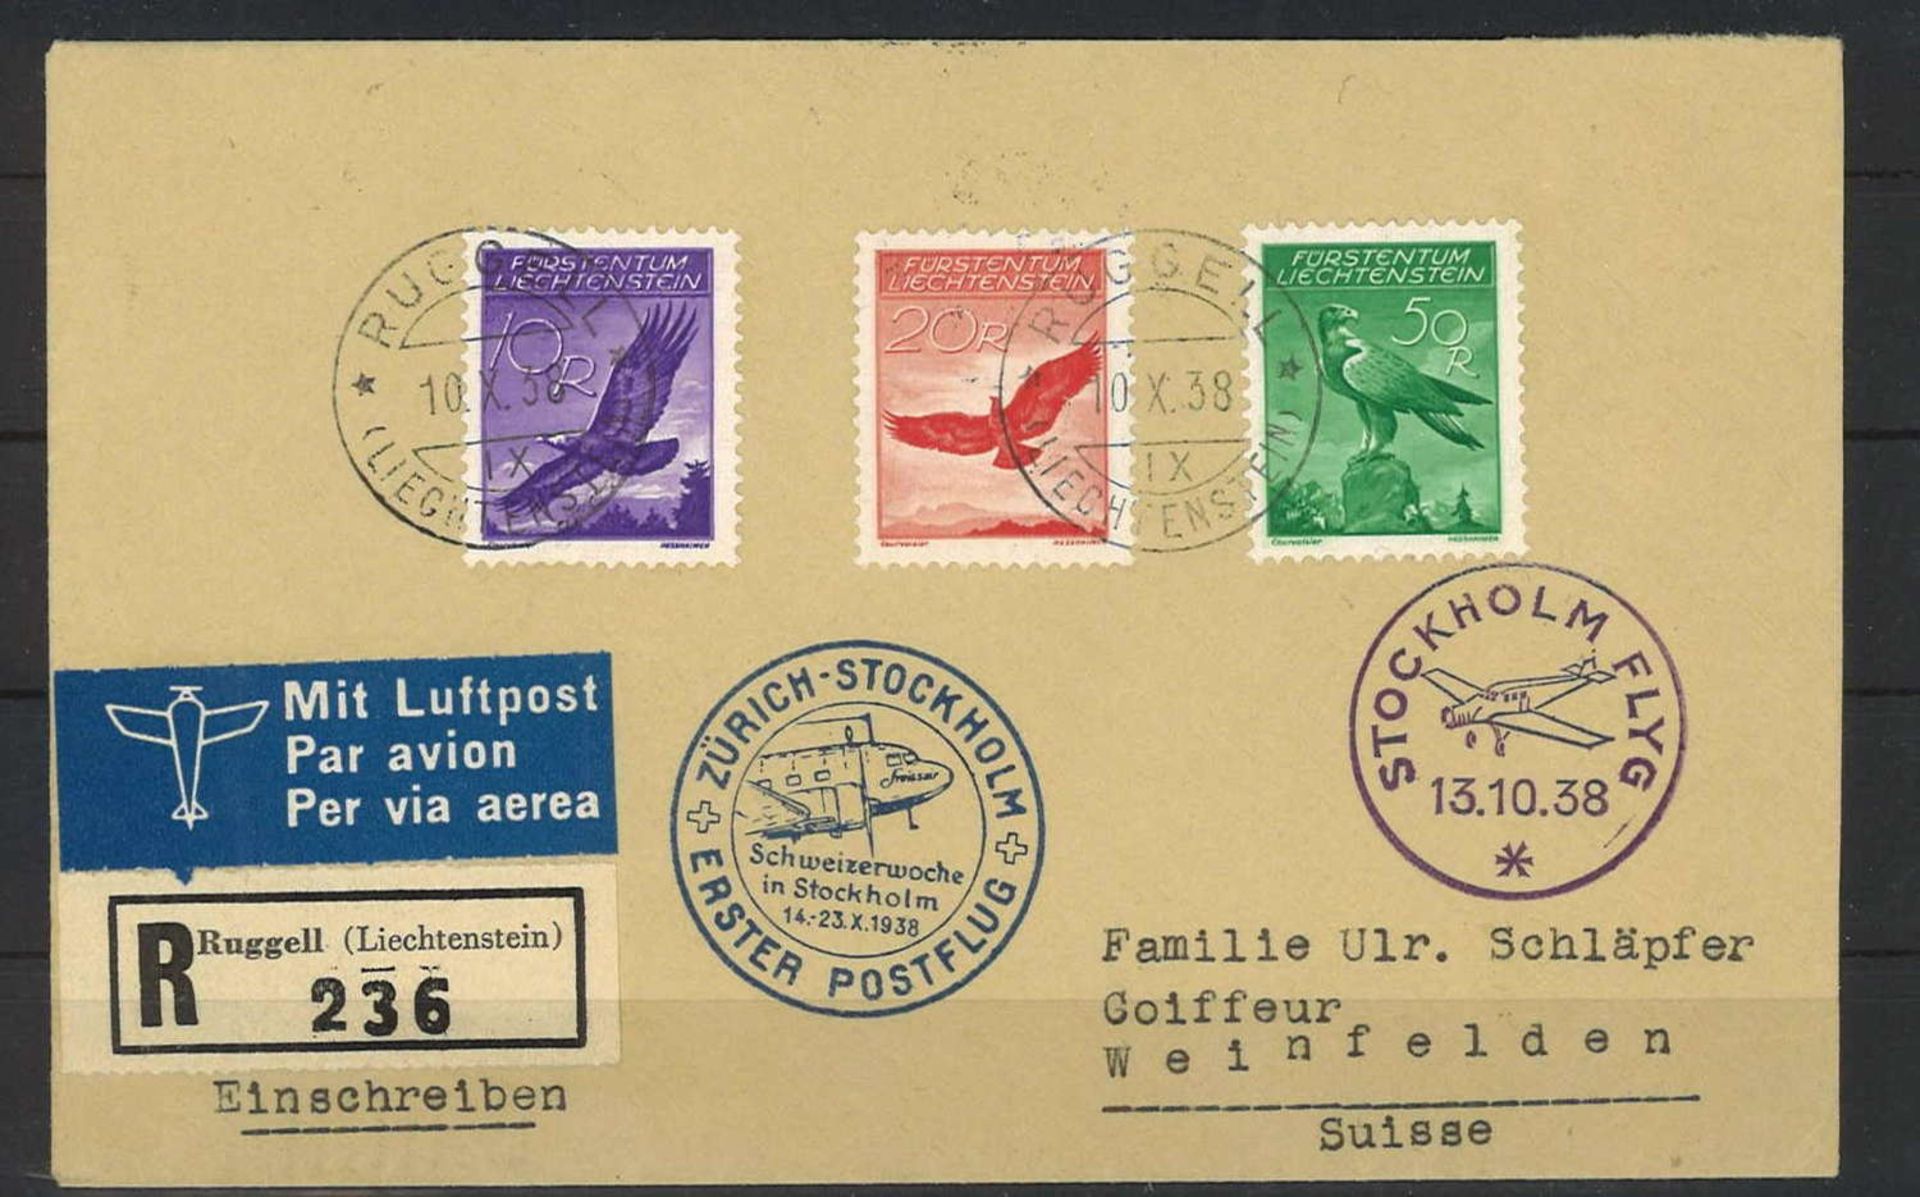 Liechtenstein, first post flight in 1938, Zurich-Stockholm, top franking with Michel No. 143, 145,